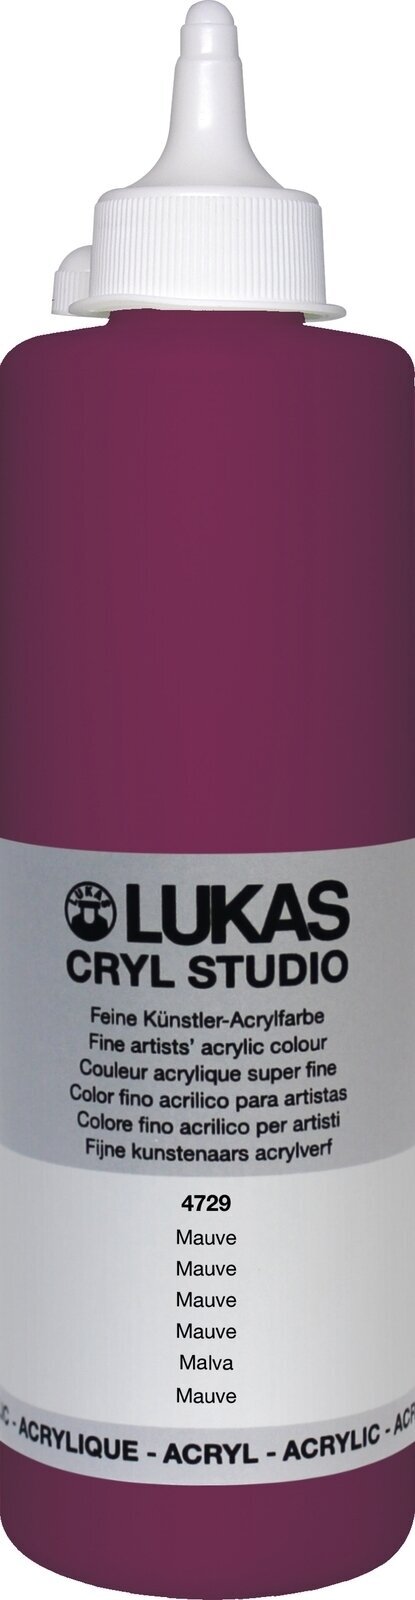 Acrylverf Lukas Cryl Studio Acrylverf 500 ml Mauve